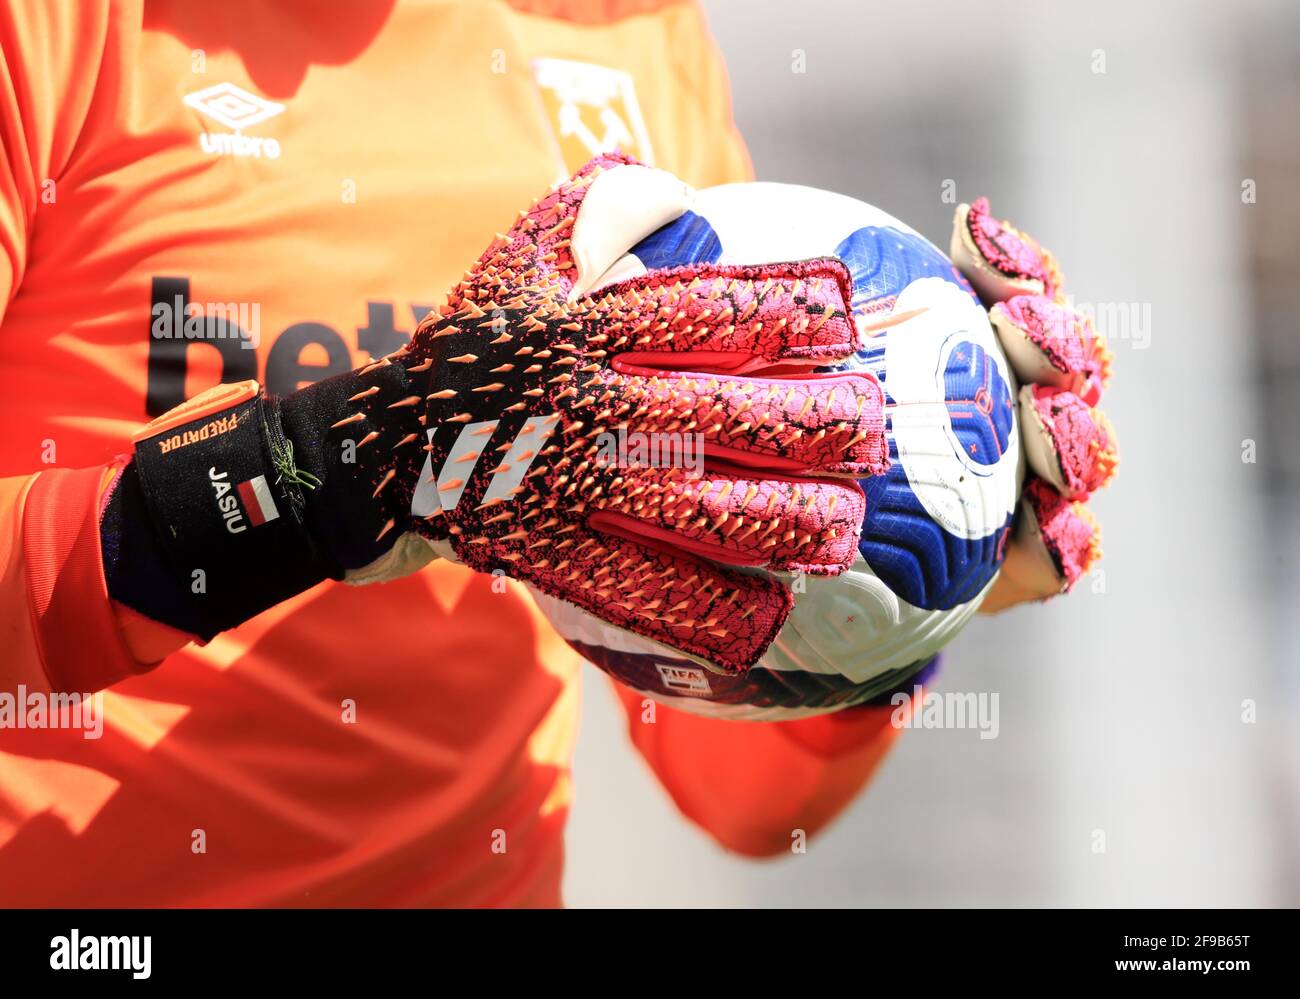 Vue sur les gants du gardien de but de West Ham United Lukasz Fabianski  lors du match de la Premier League à St James' Park, Newcastle. Date de la  photo: Samedi 17